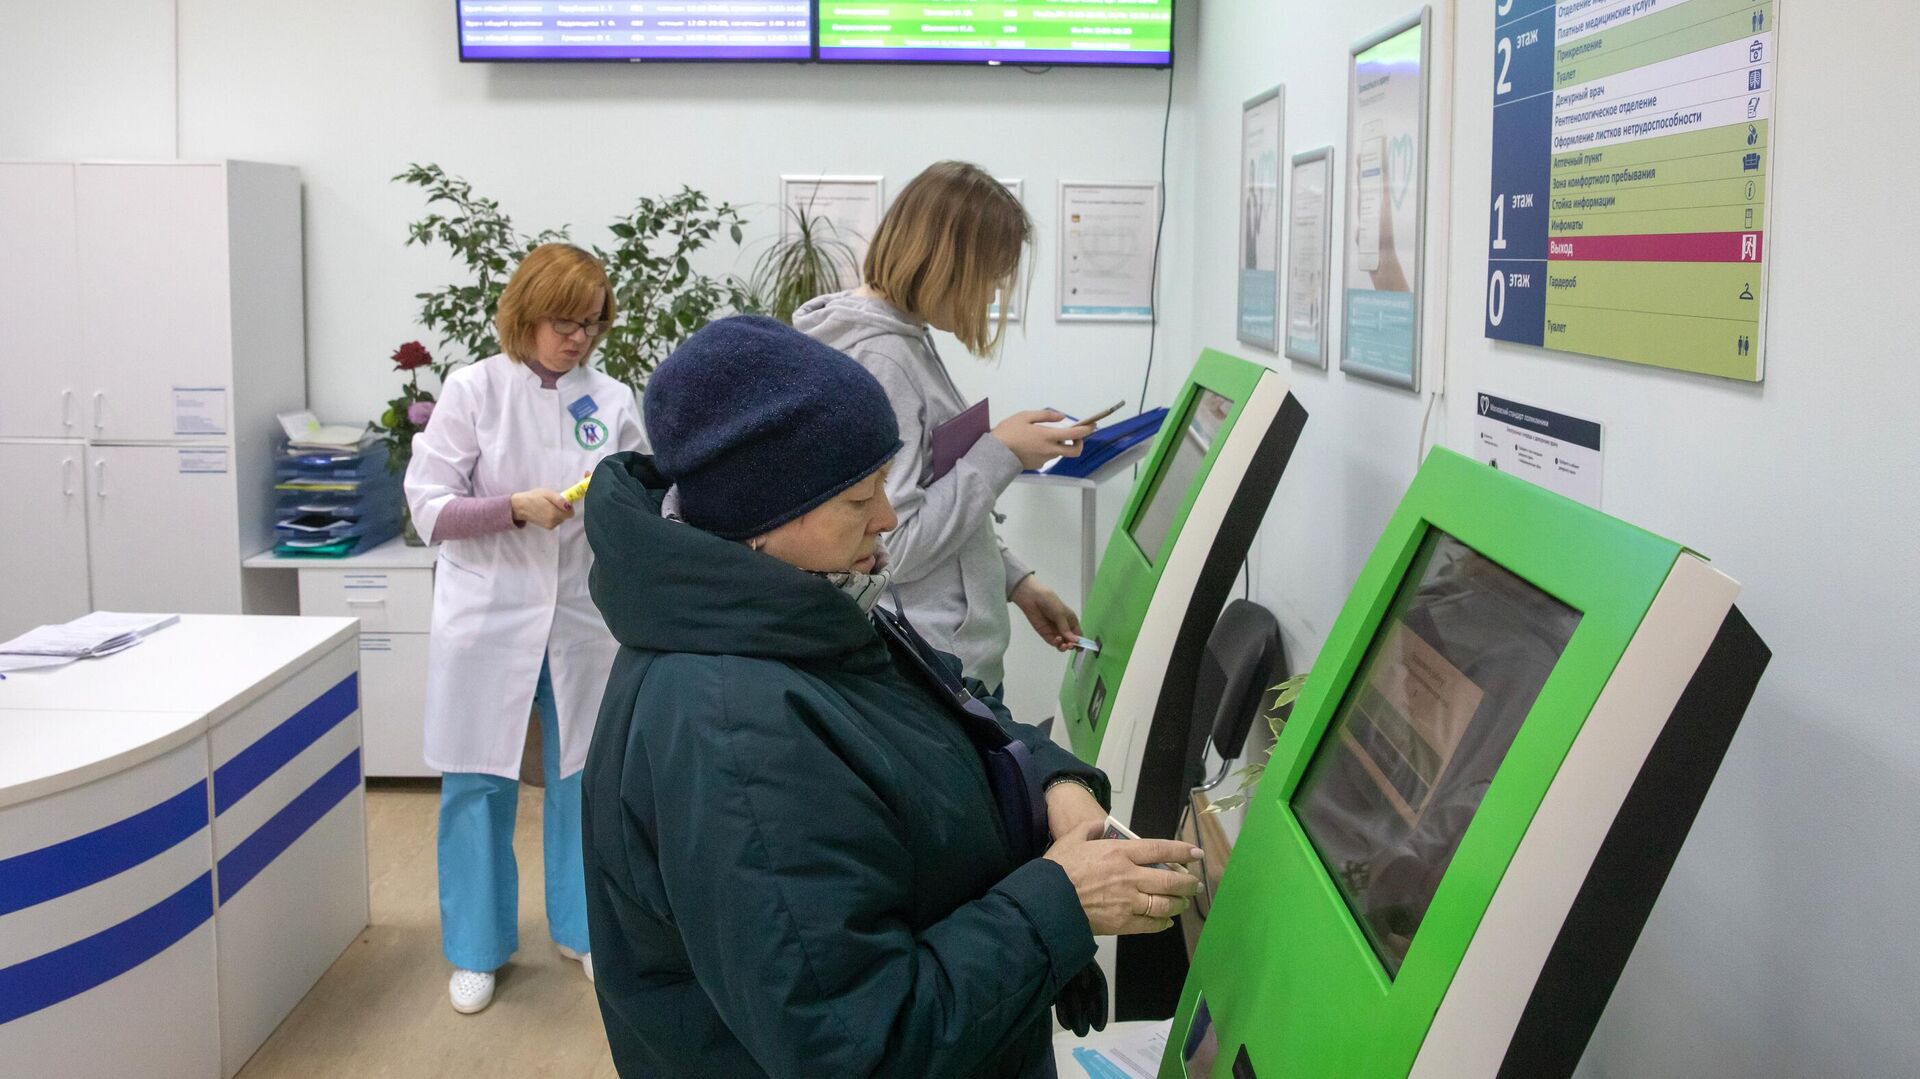  Пациенты записываются на прием к врачу через электронные терминалы в Москве   - РИА Новости, 1920, 30.12.2020